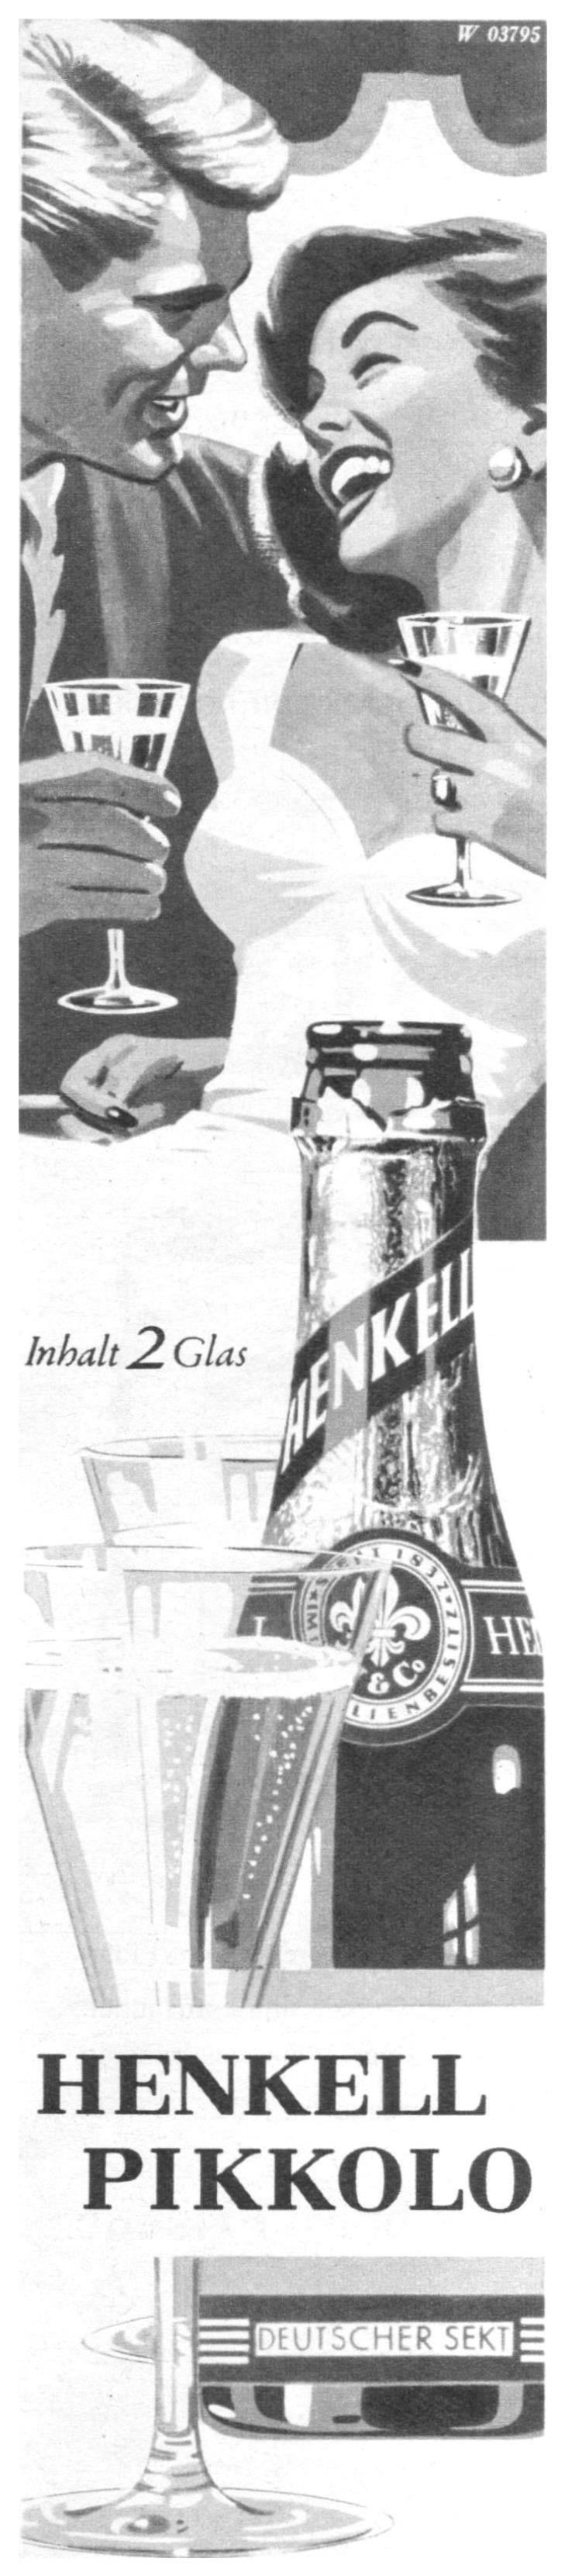 Henkell 1958 40.jpg